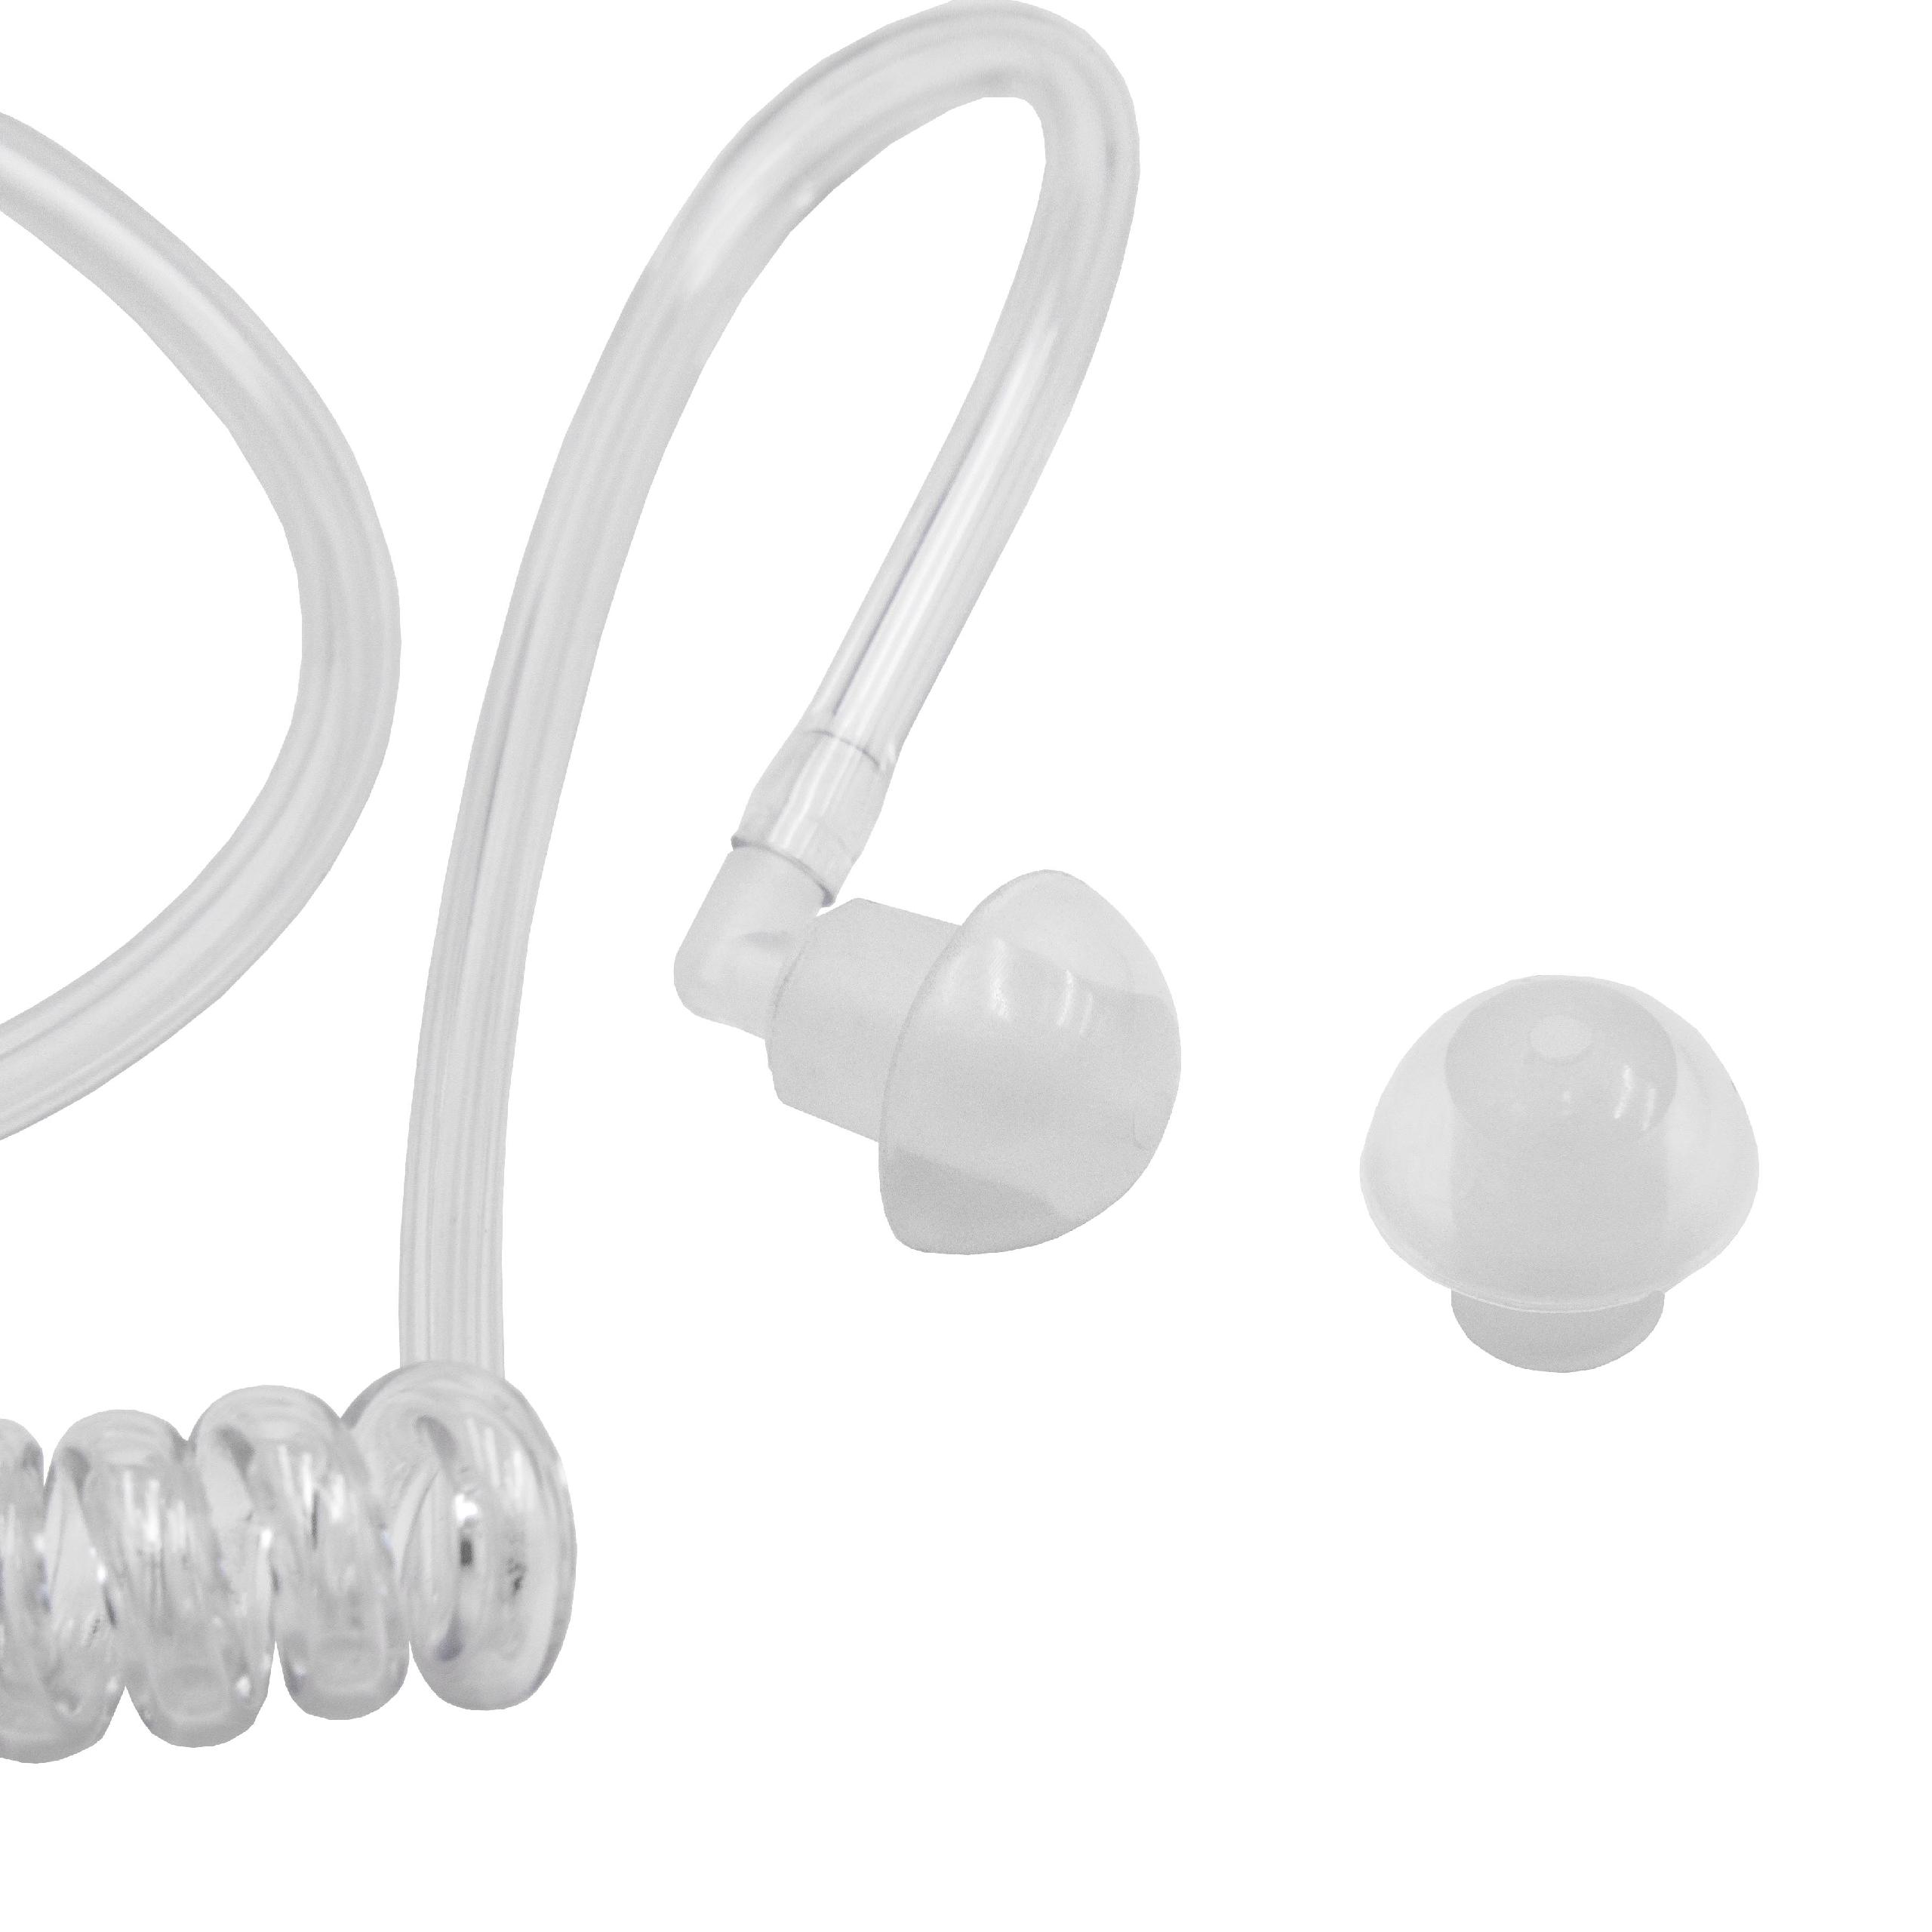 Schallschlauch Ohrhörer passend für Motorola FTN6707 Headset & alle gängigen Security-Headsets + Clip